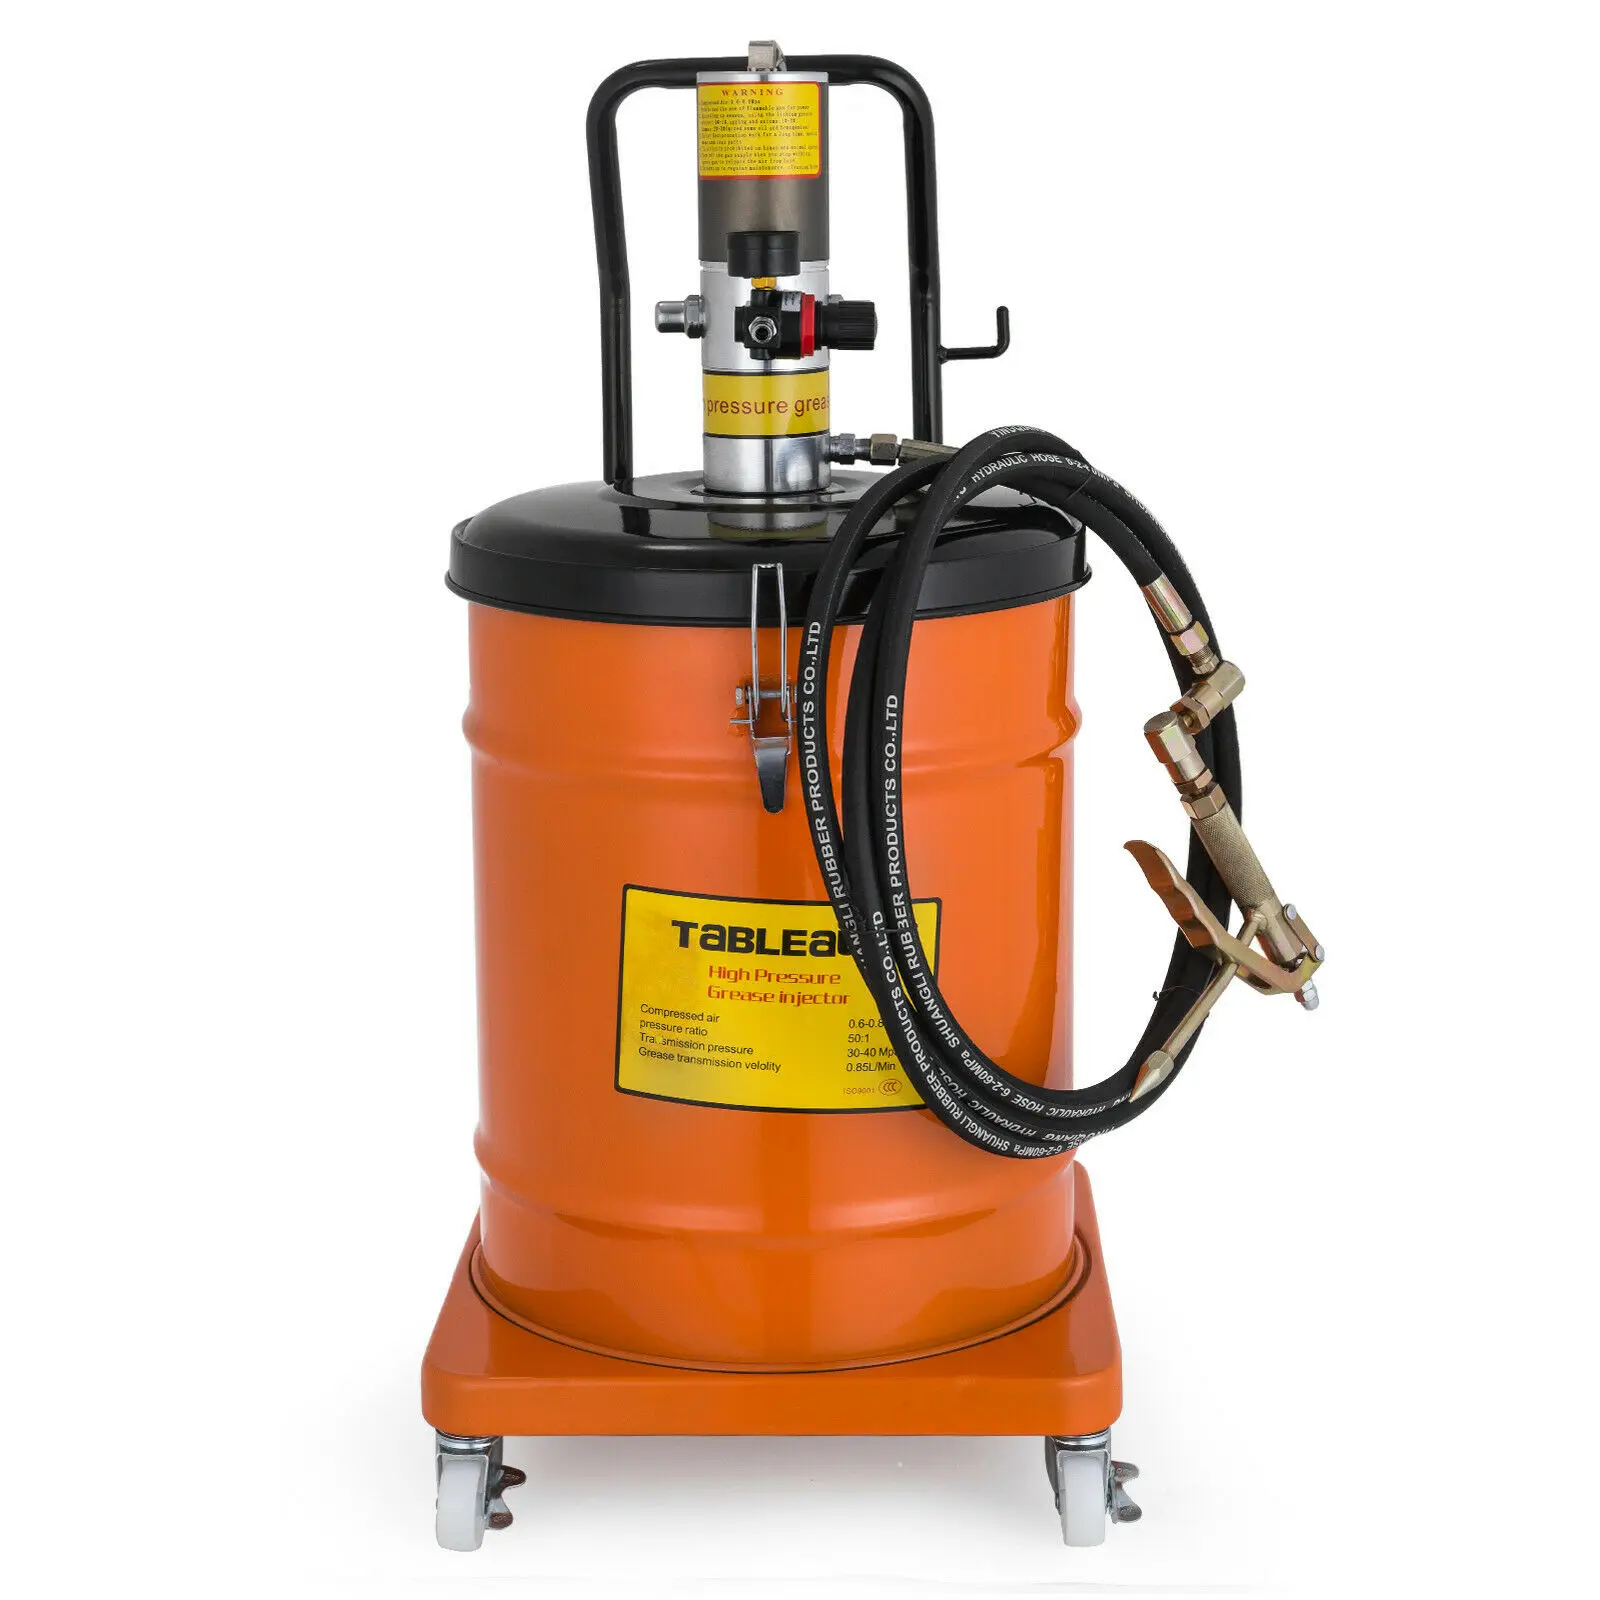 

10 Gallon Grease Pump Air Pneumatic 40L 50:1 Pressure Ratio Spray Gun